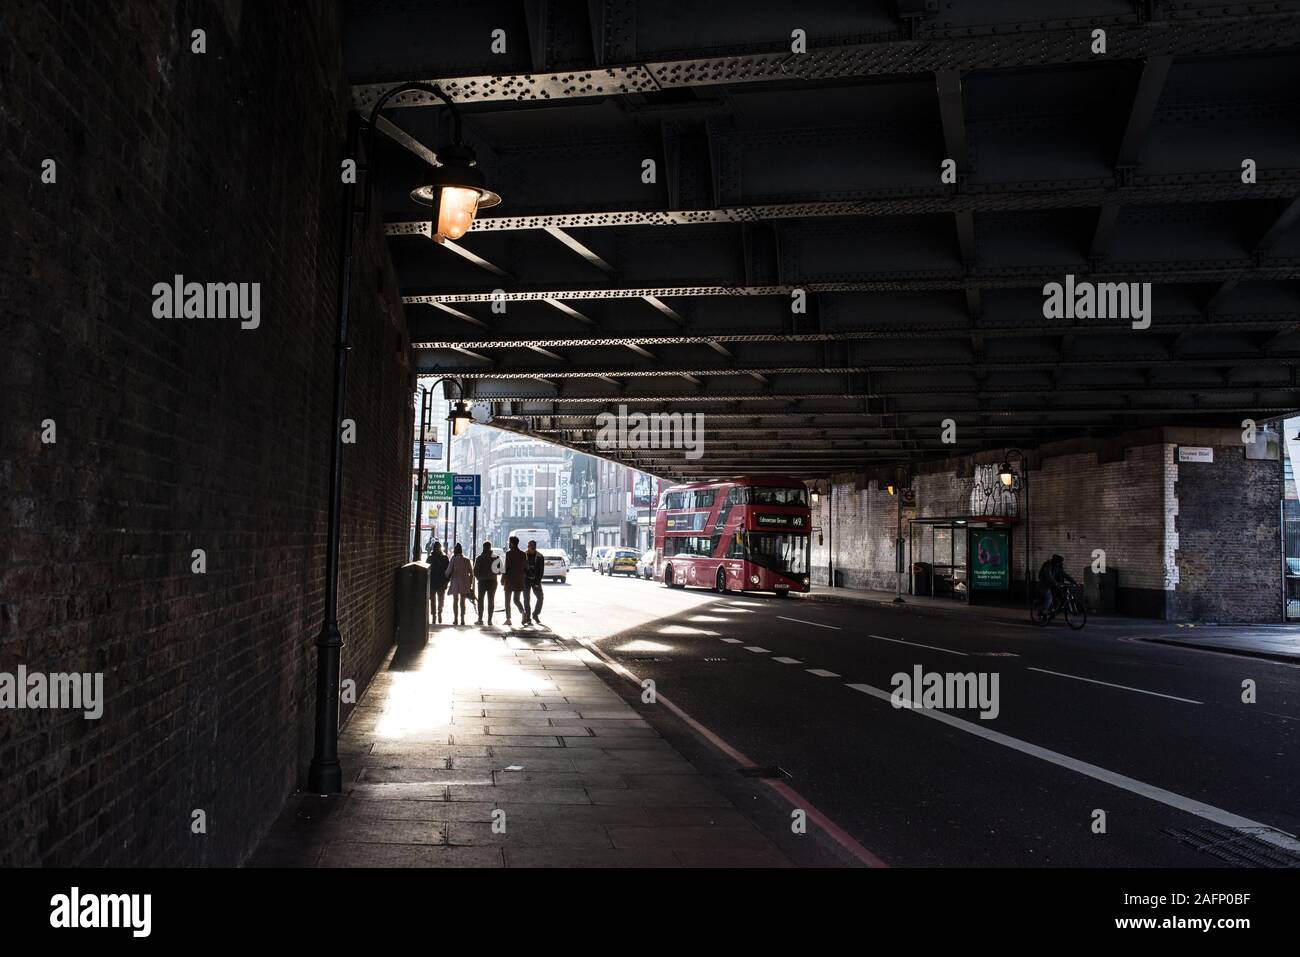 Straßenszene in Shoreditch, East London mit Schatten Silhouetten der fünf Menschen zu Fuß unter einer Straßenbrücke und red London Bus Stockfoto